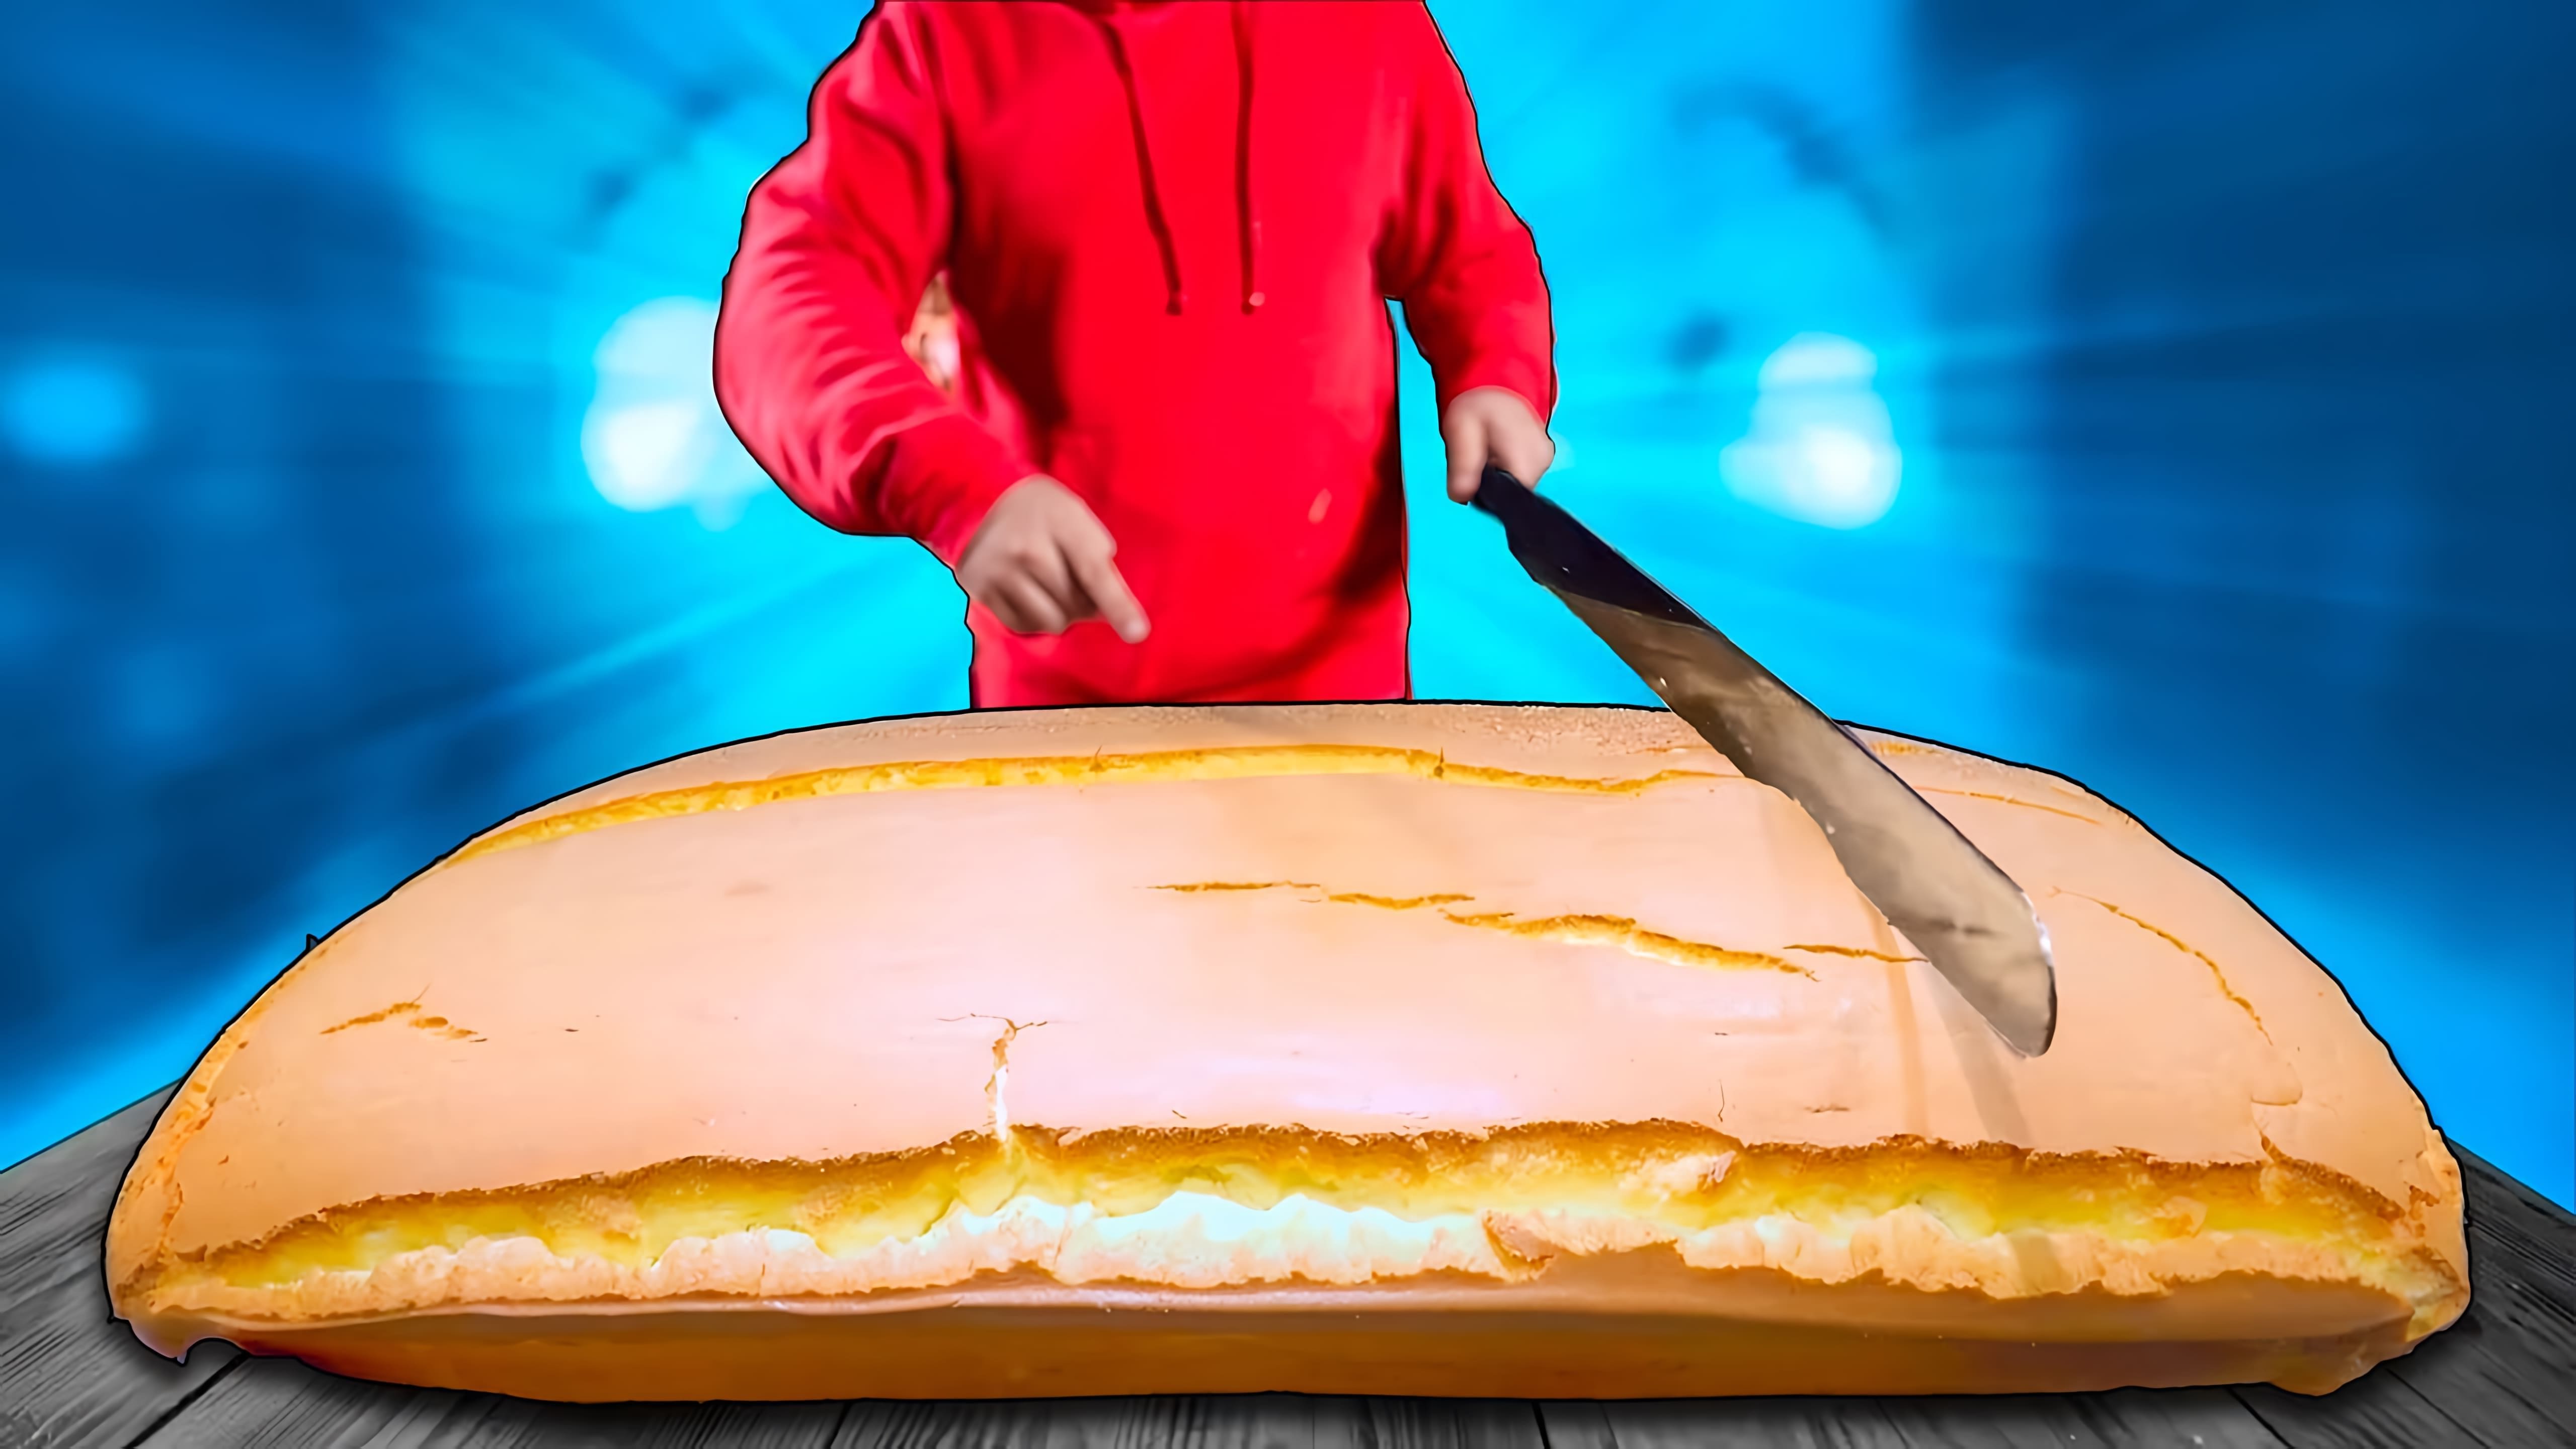 В этом видео мы видим, как готовится самый мягкий в мире тайваньский торт Кастелло